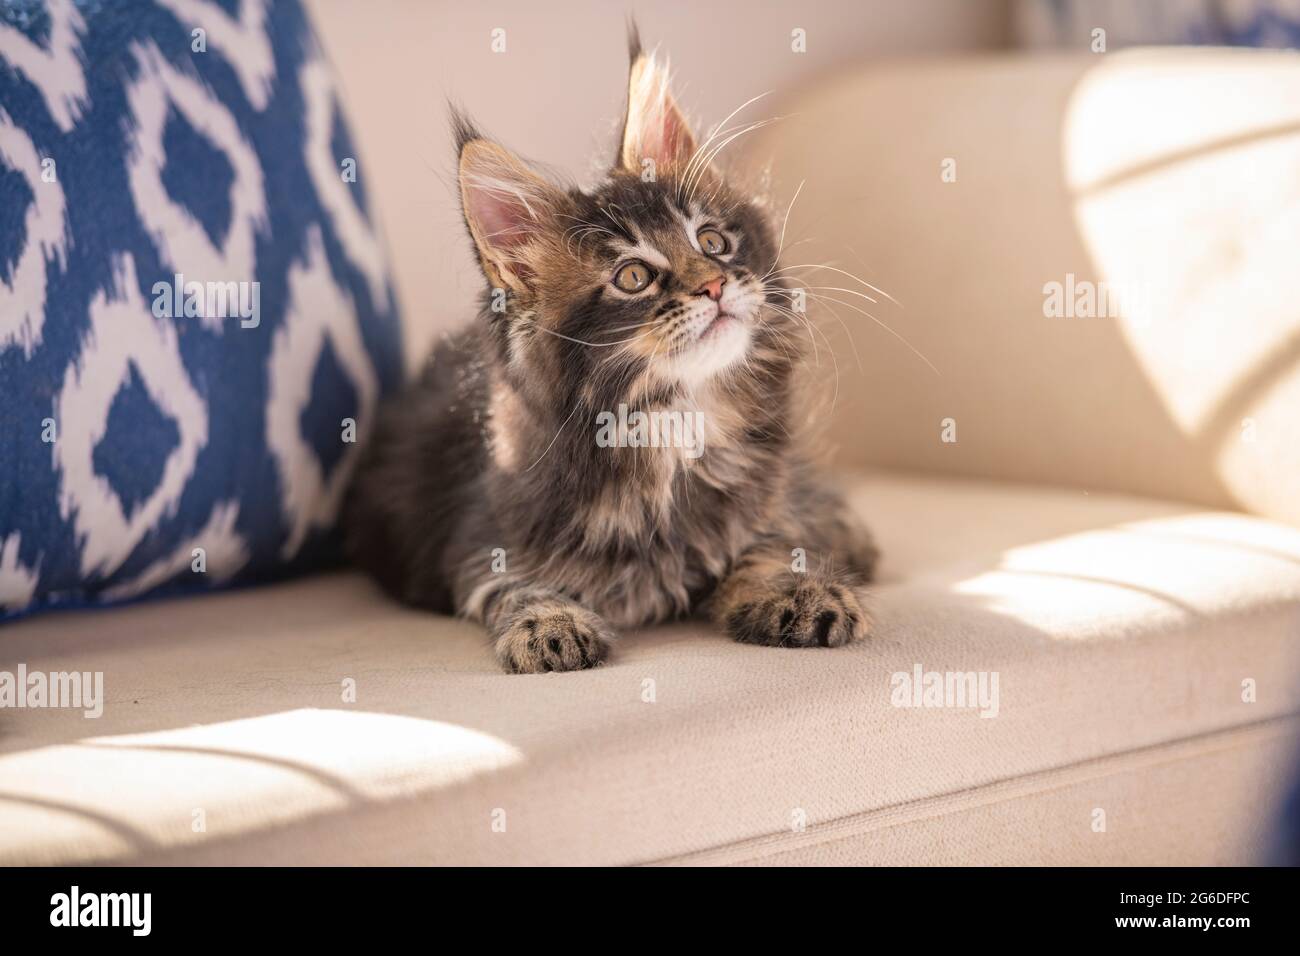 Main Coon cat kitten Stock Photo